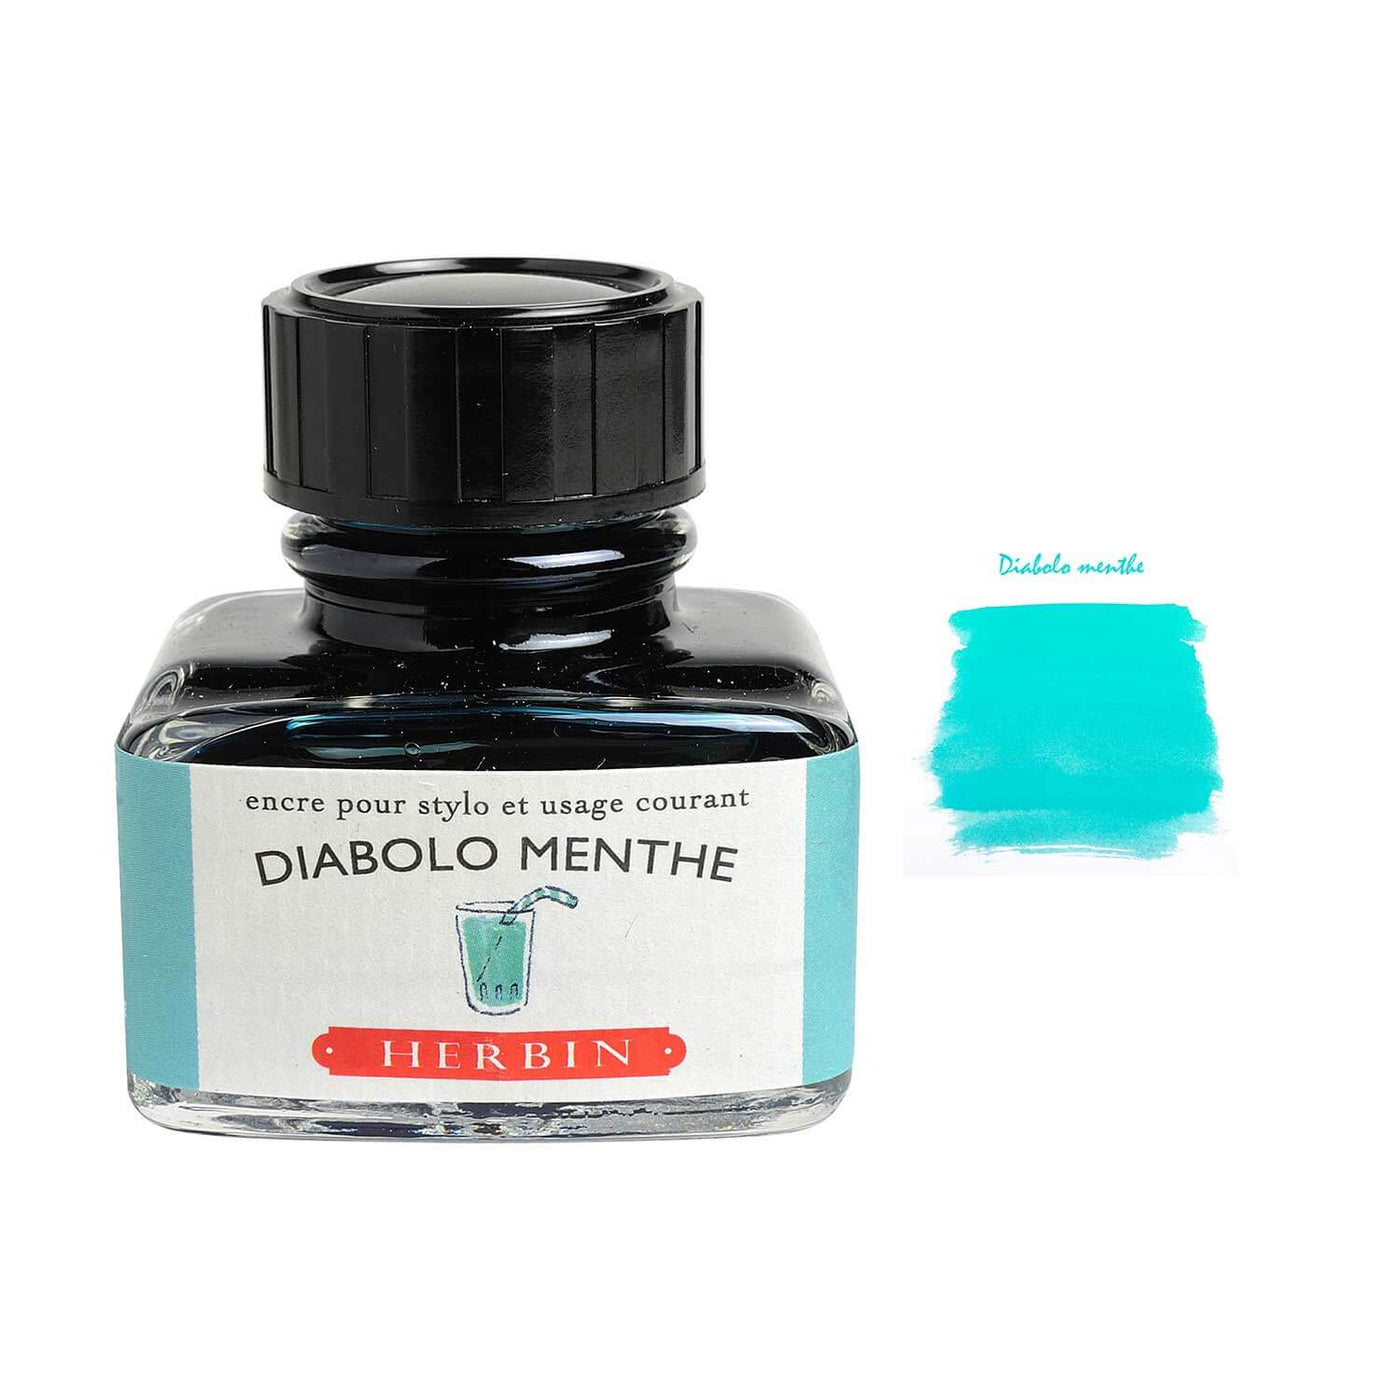 J Herbin "D" Series Ink Bottle Diabolo Menthe (Green Turquoise) - 30ml 1